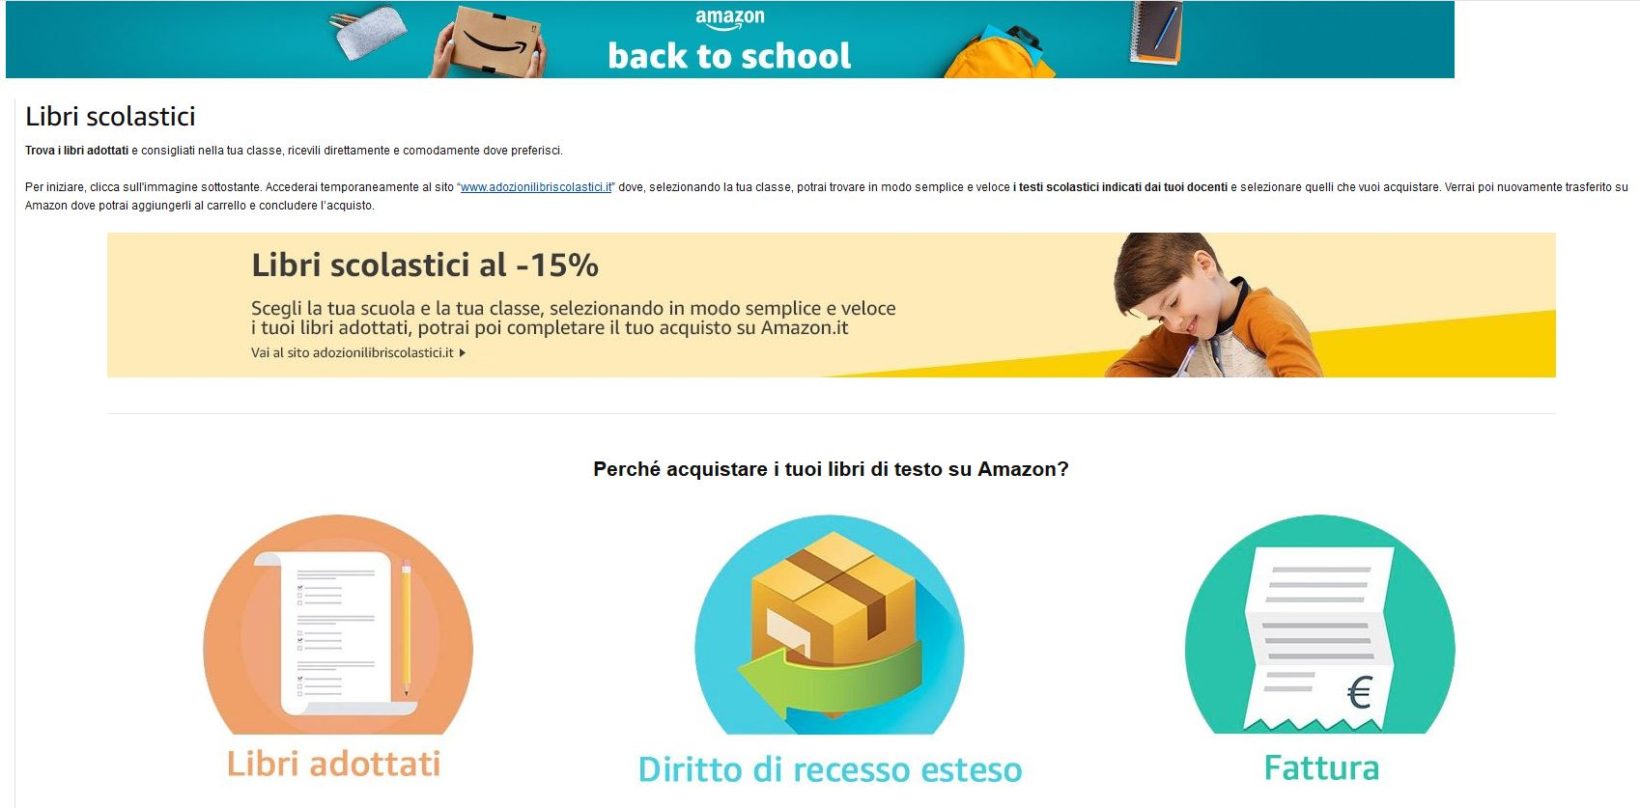 Operazione 15 e lode: back to school con sconti al 15 per cento sui libri scolastici su Amazon